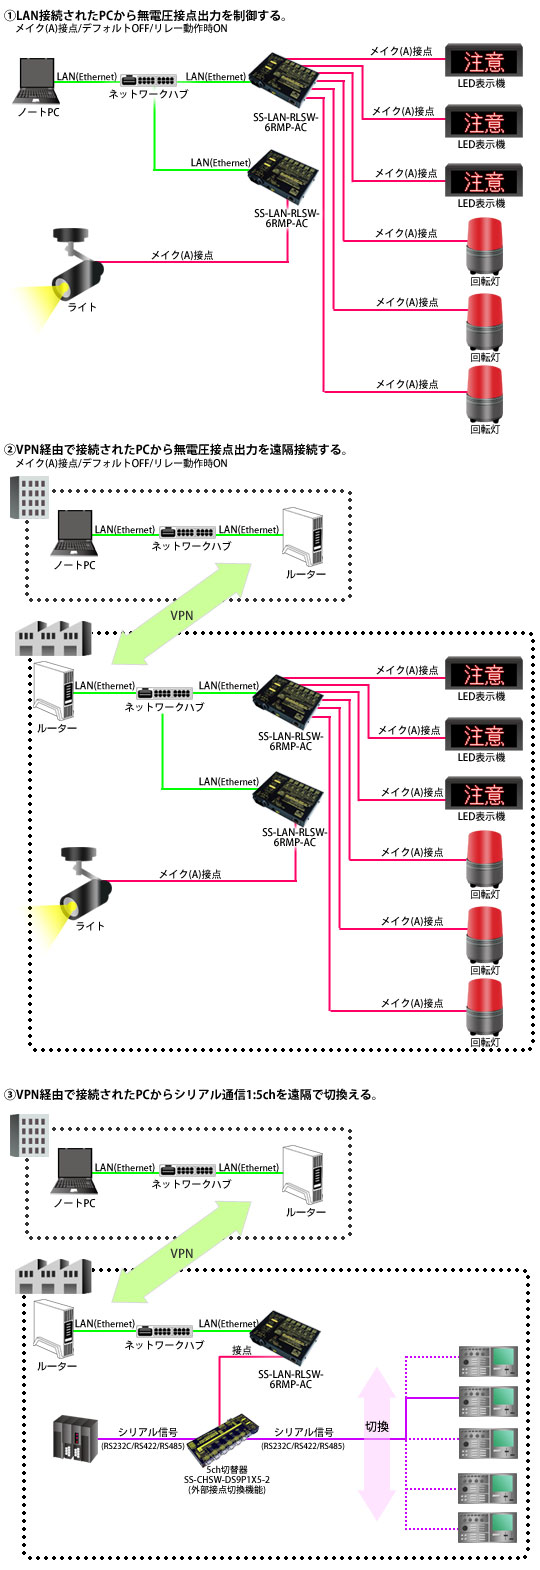 SS-LAN-RLSW-6RMP-AC接続例